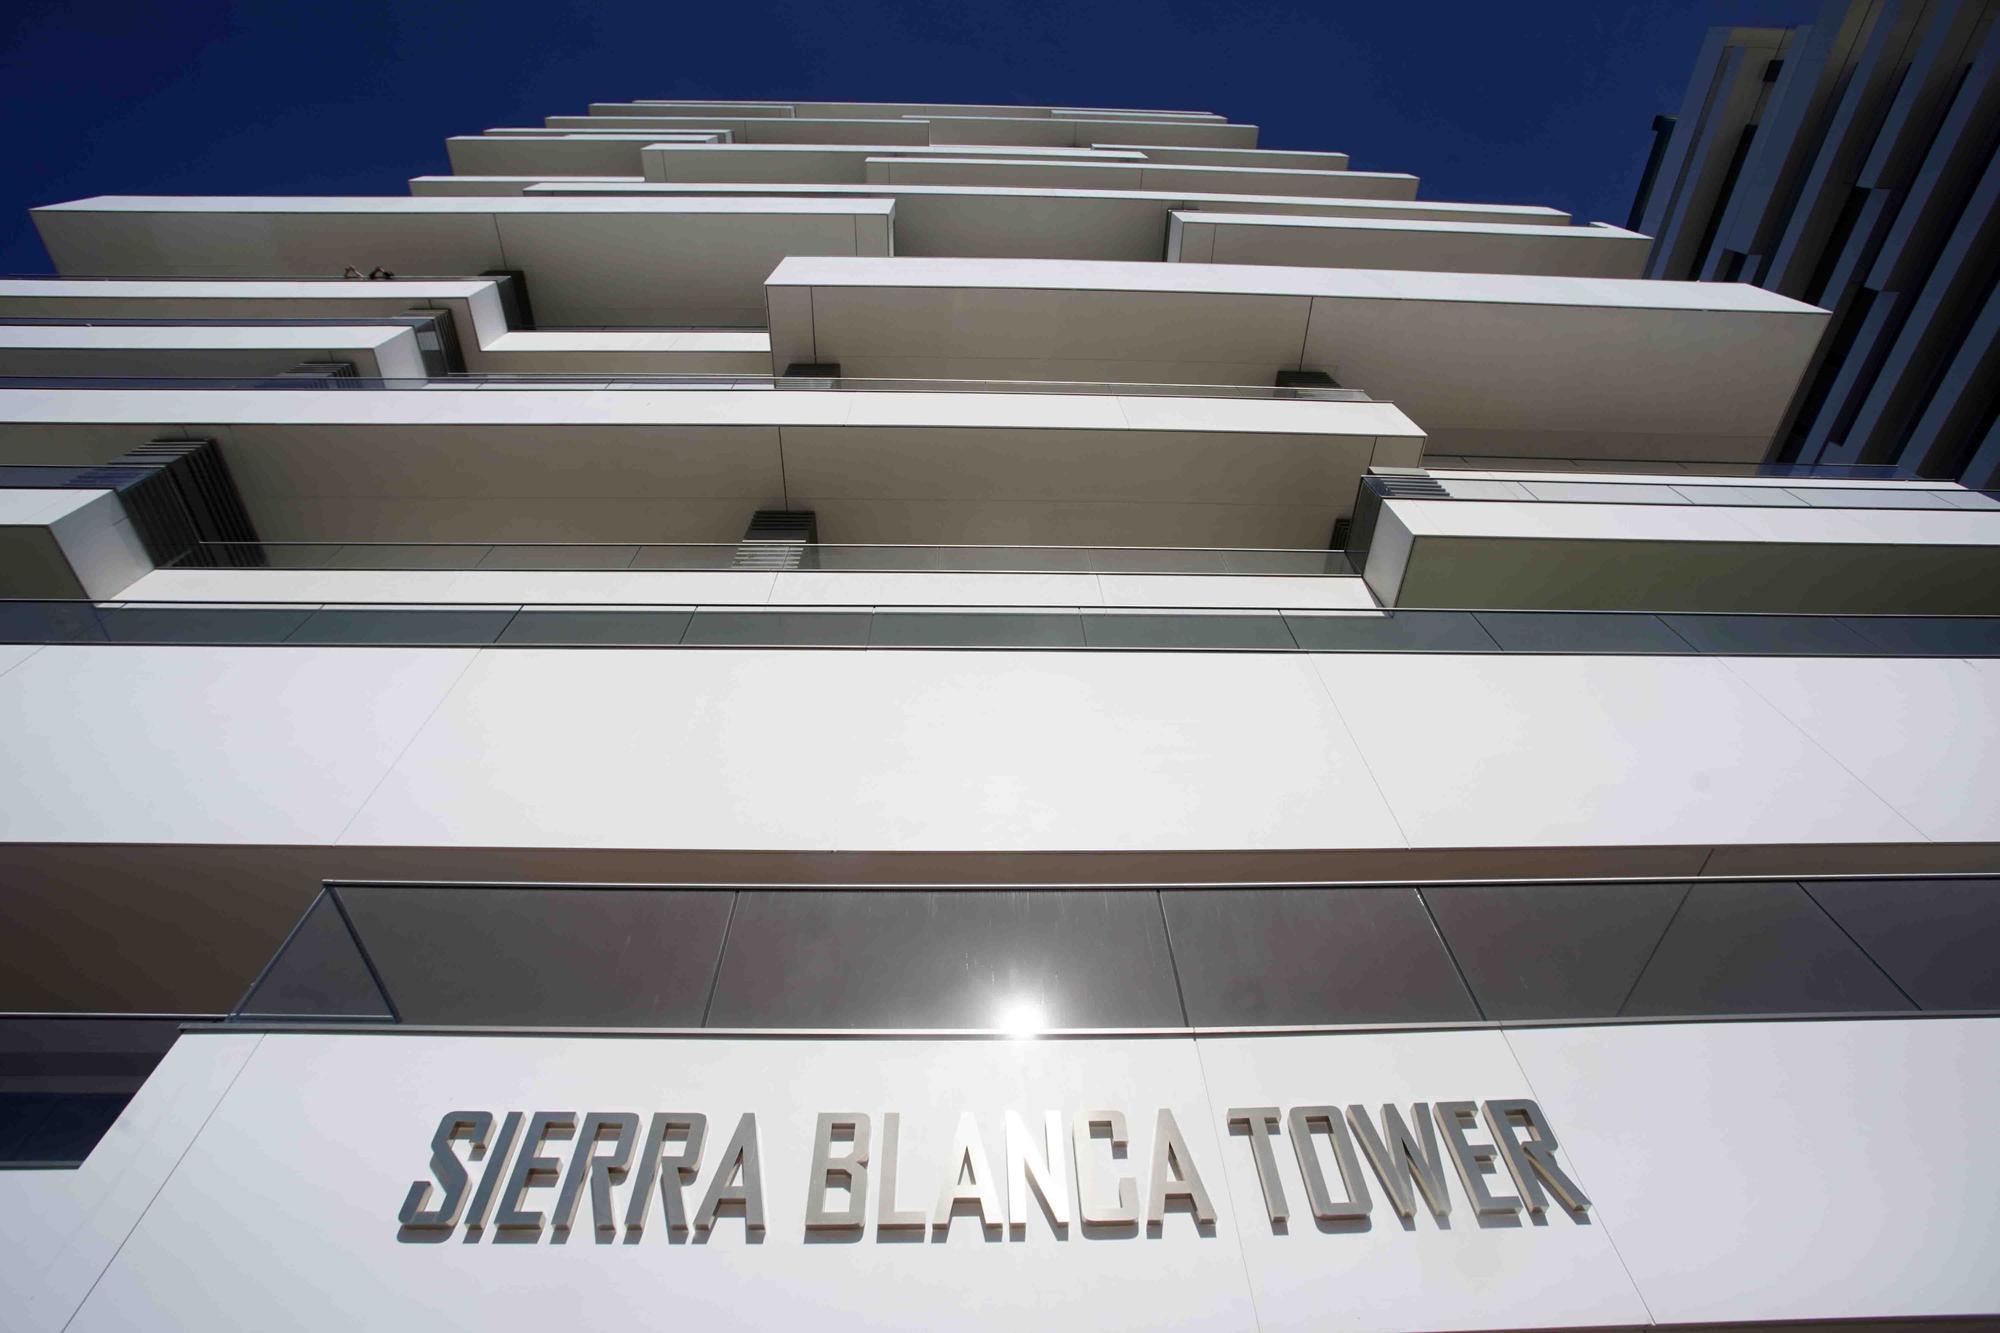 Sierra Blanca Towers pone a la venta sus exclusivos áticos en el rascacielos construido en La Térmica